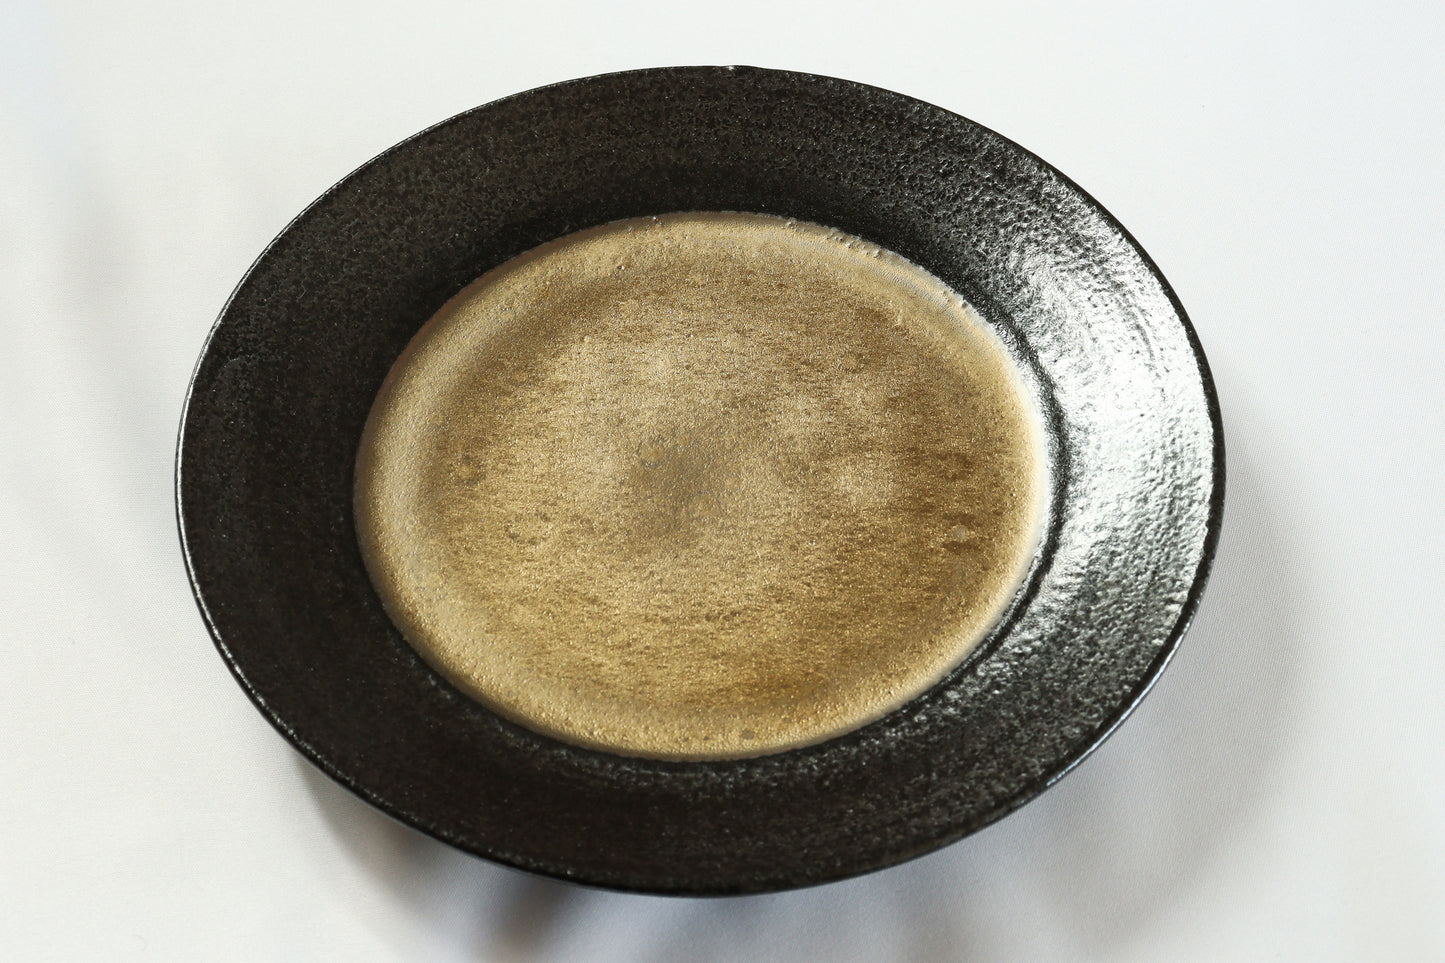 3101-0105　美濃焼　陶器・磁器の両方の良さを兼ね備えたハイブリッドシリーズ
7寸皿 （22φ×H2.5）